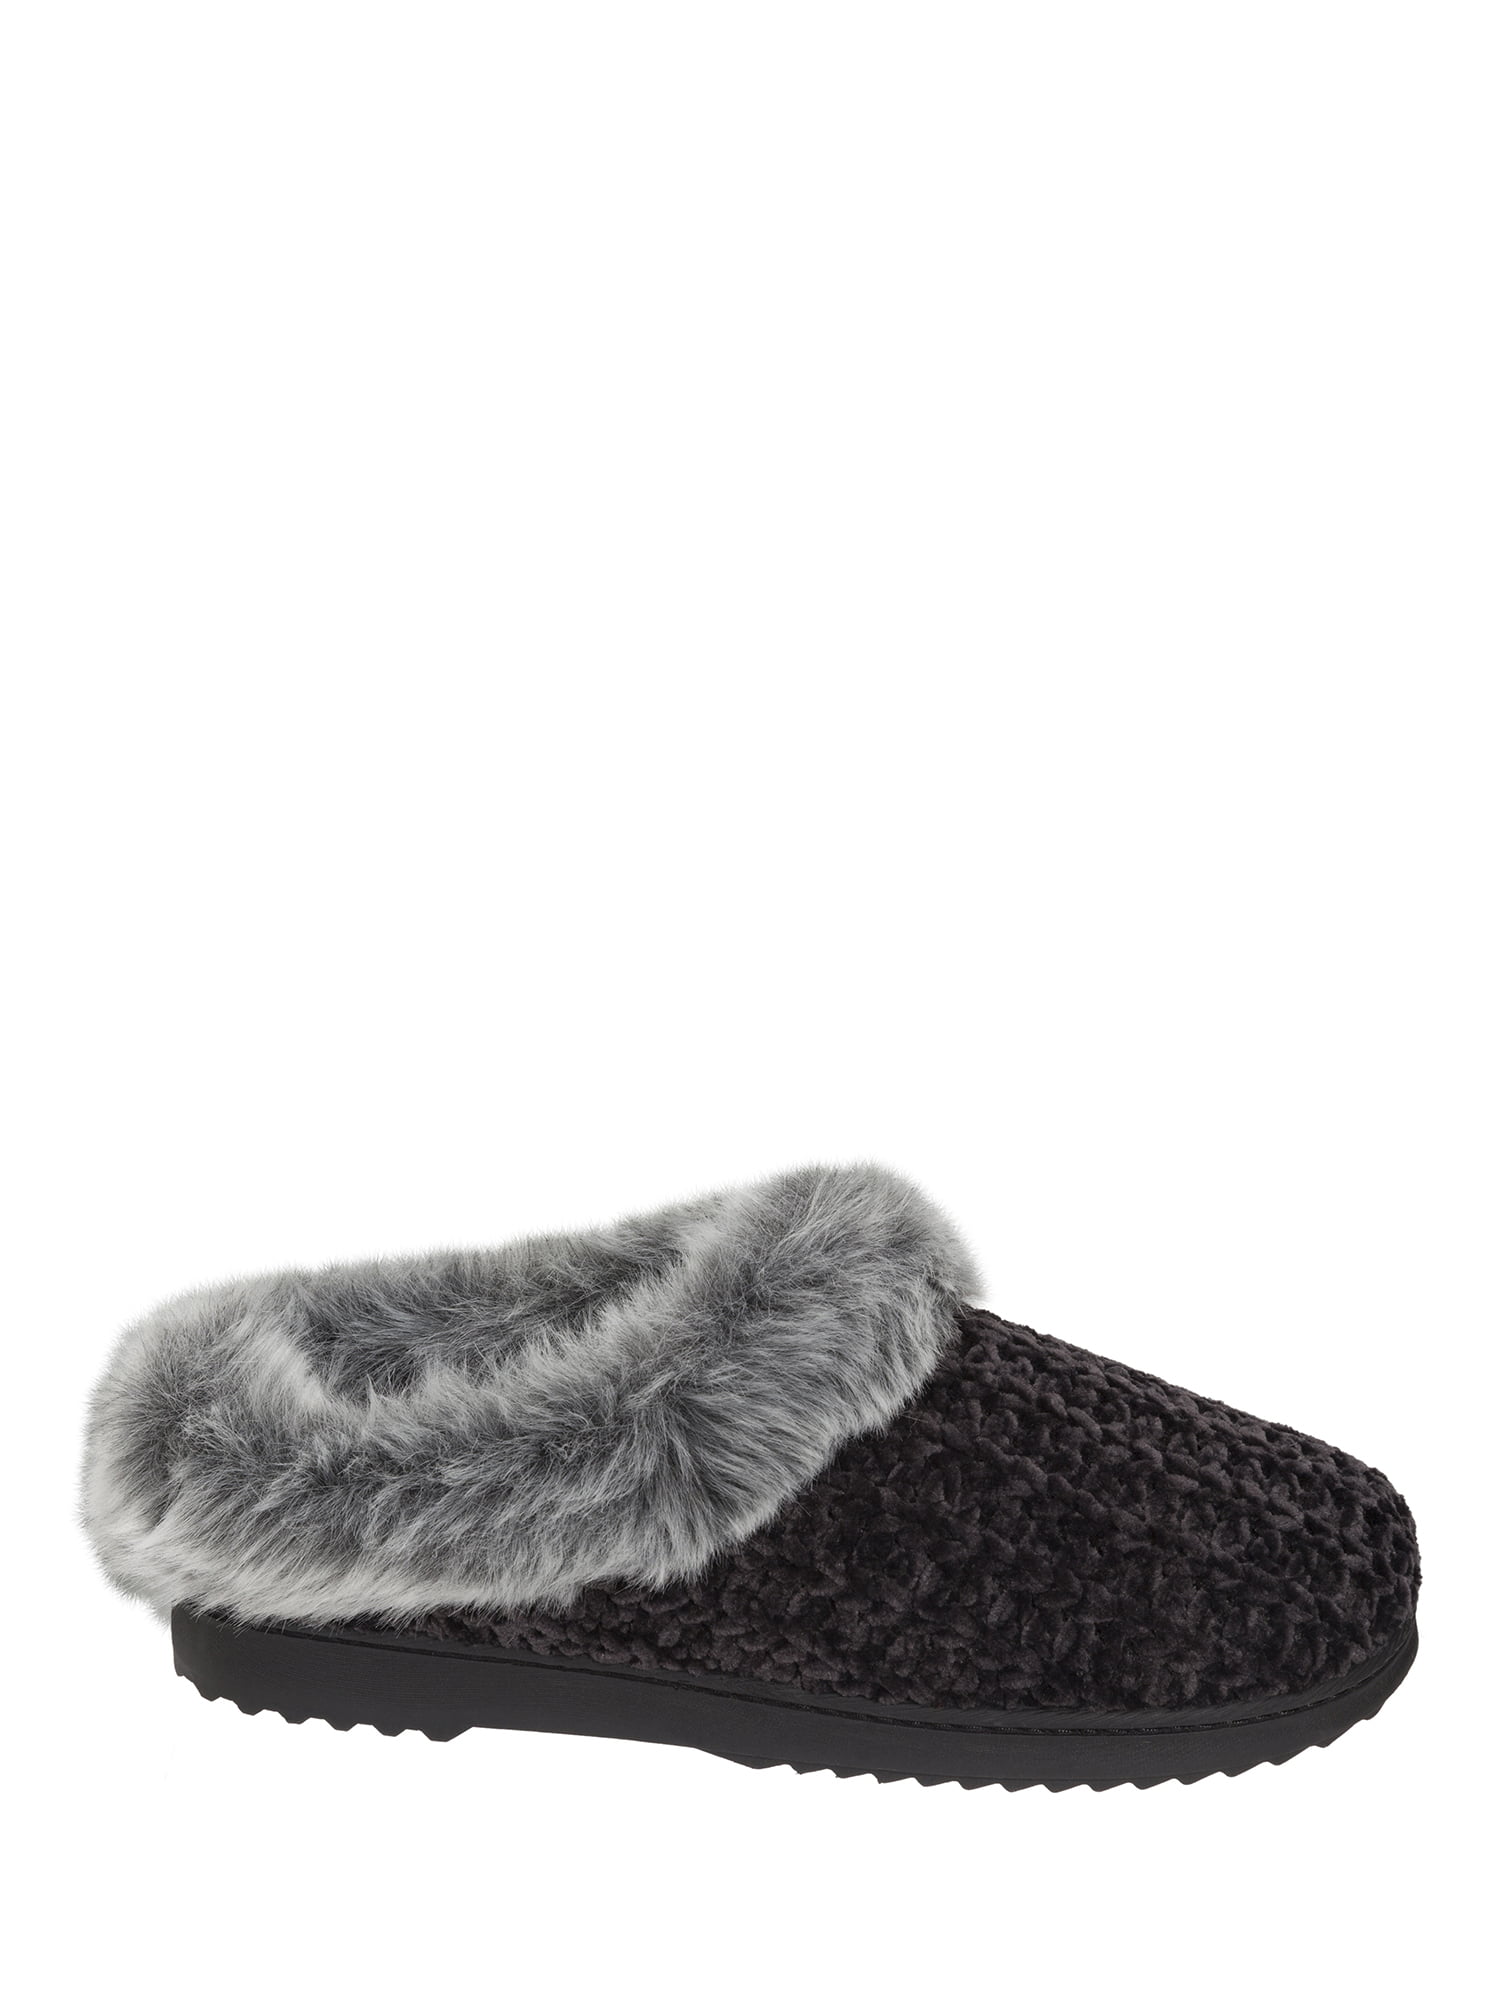 cheap slippers walmart